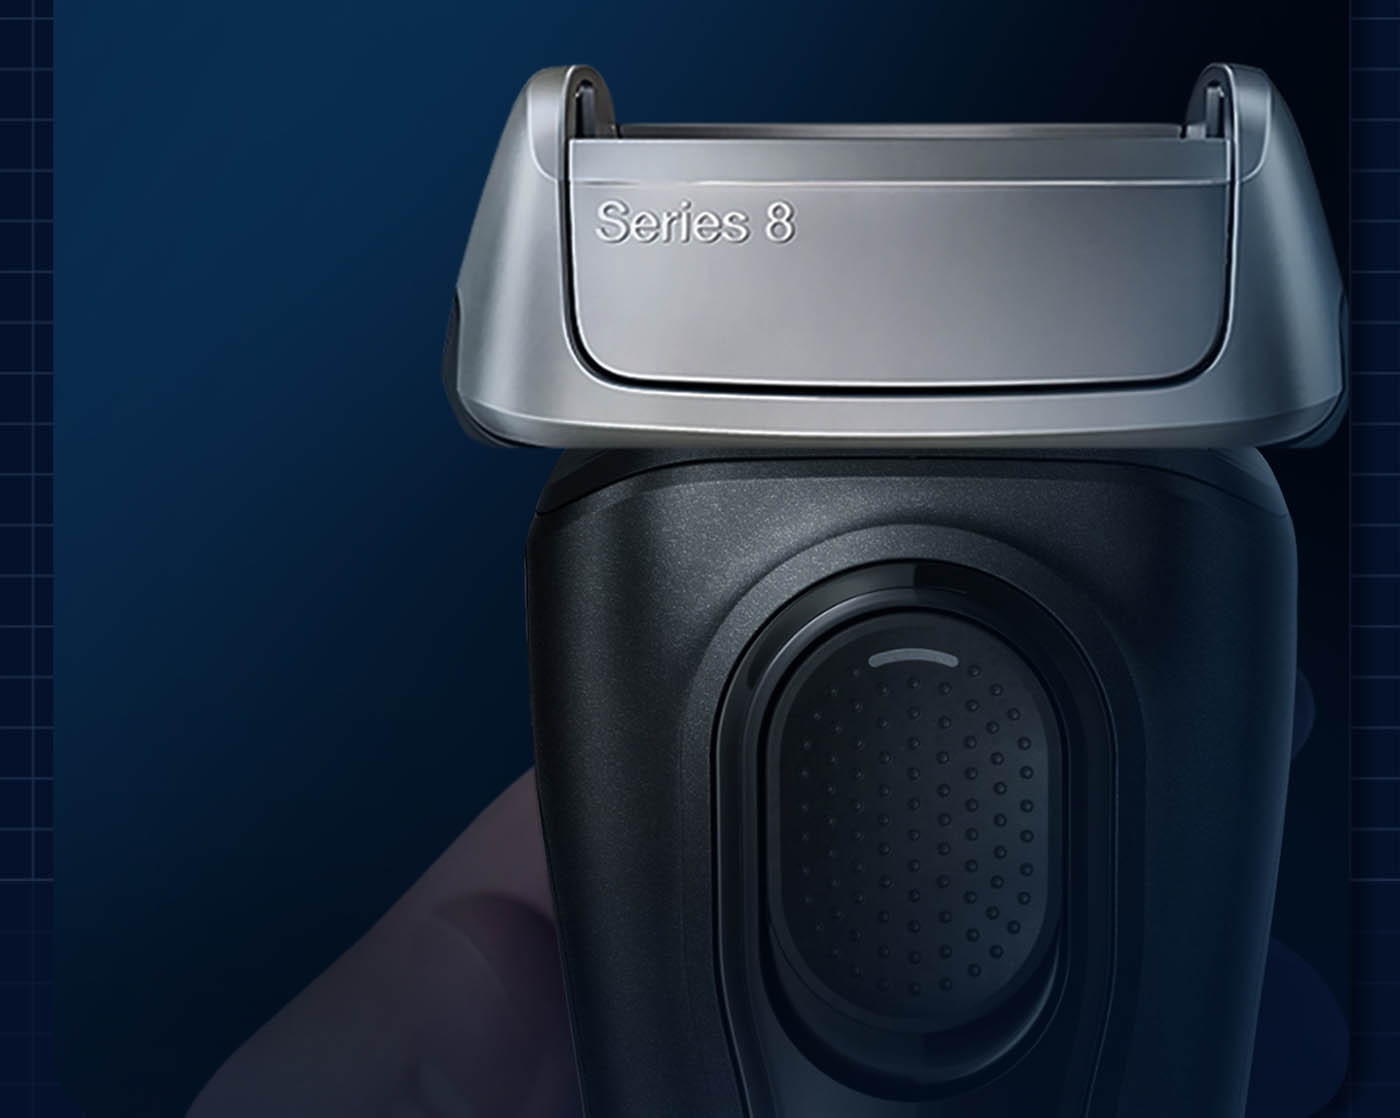 百靈 8系列諧震音波電鬍刀 8410S 德國製造，2年保固，音波科技：自動偵測臉型及鬍鬚濃密度，調整動力剃鬍更潔淨，全機身防水設計，乾濕兩用。